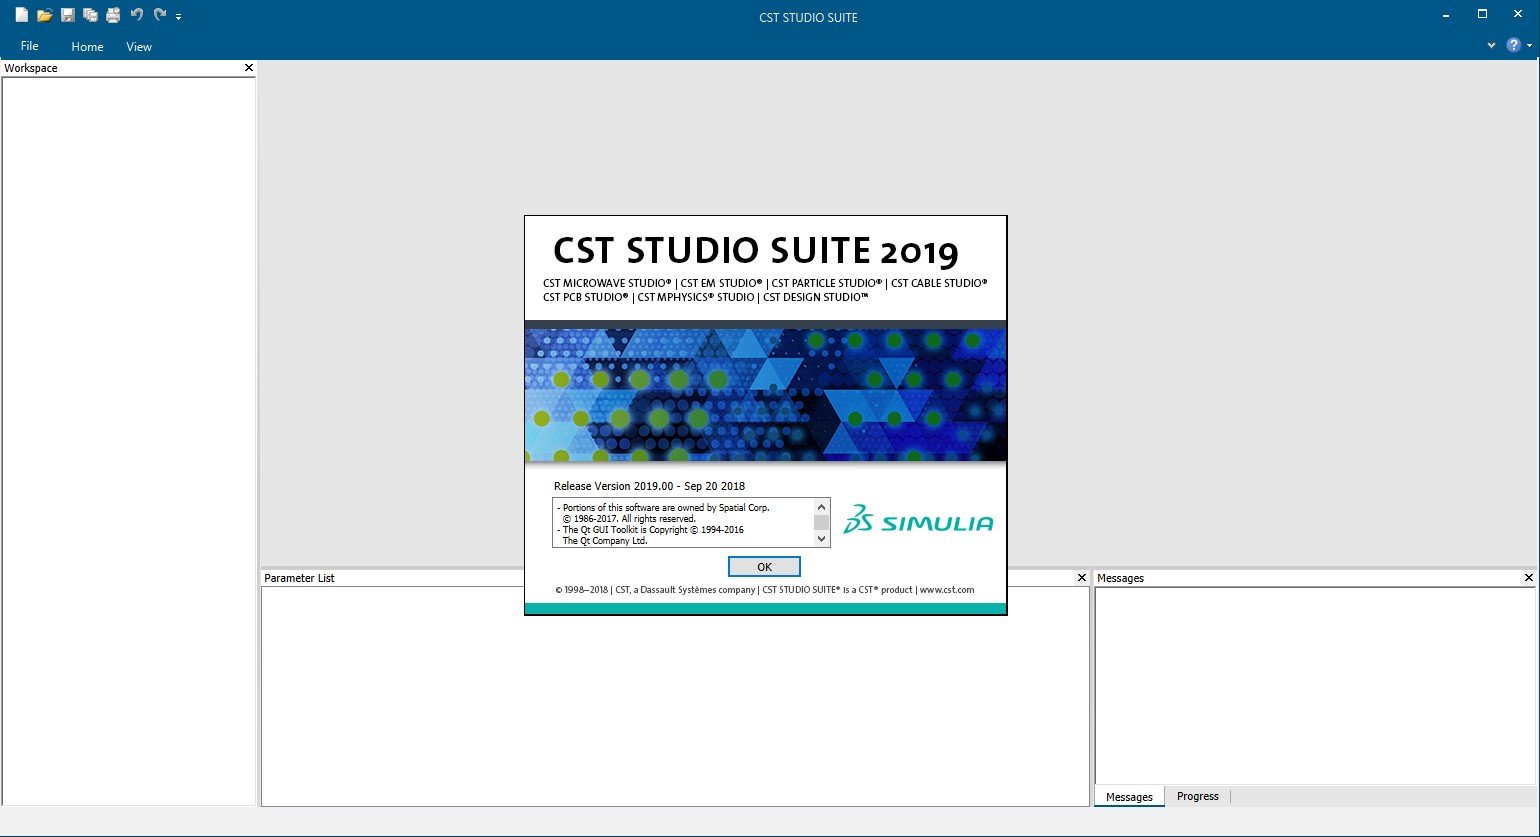 cst studio suite 2019 manual pdf